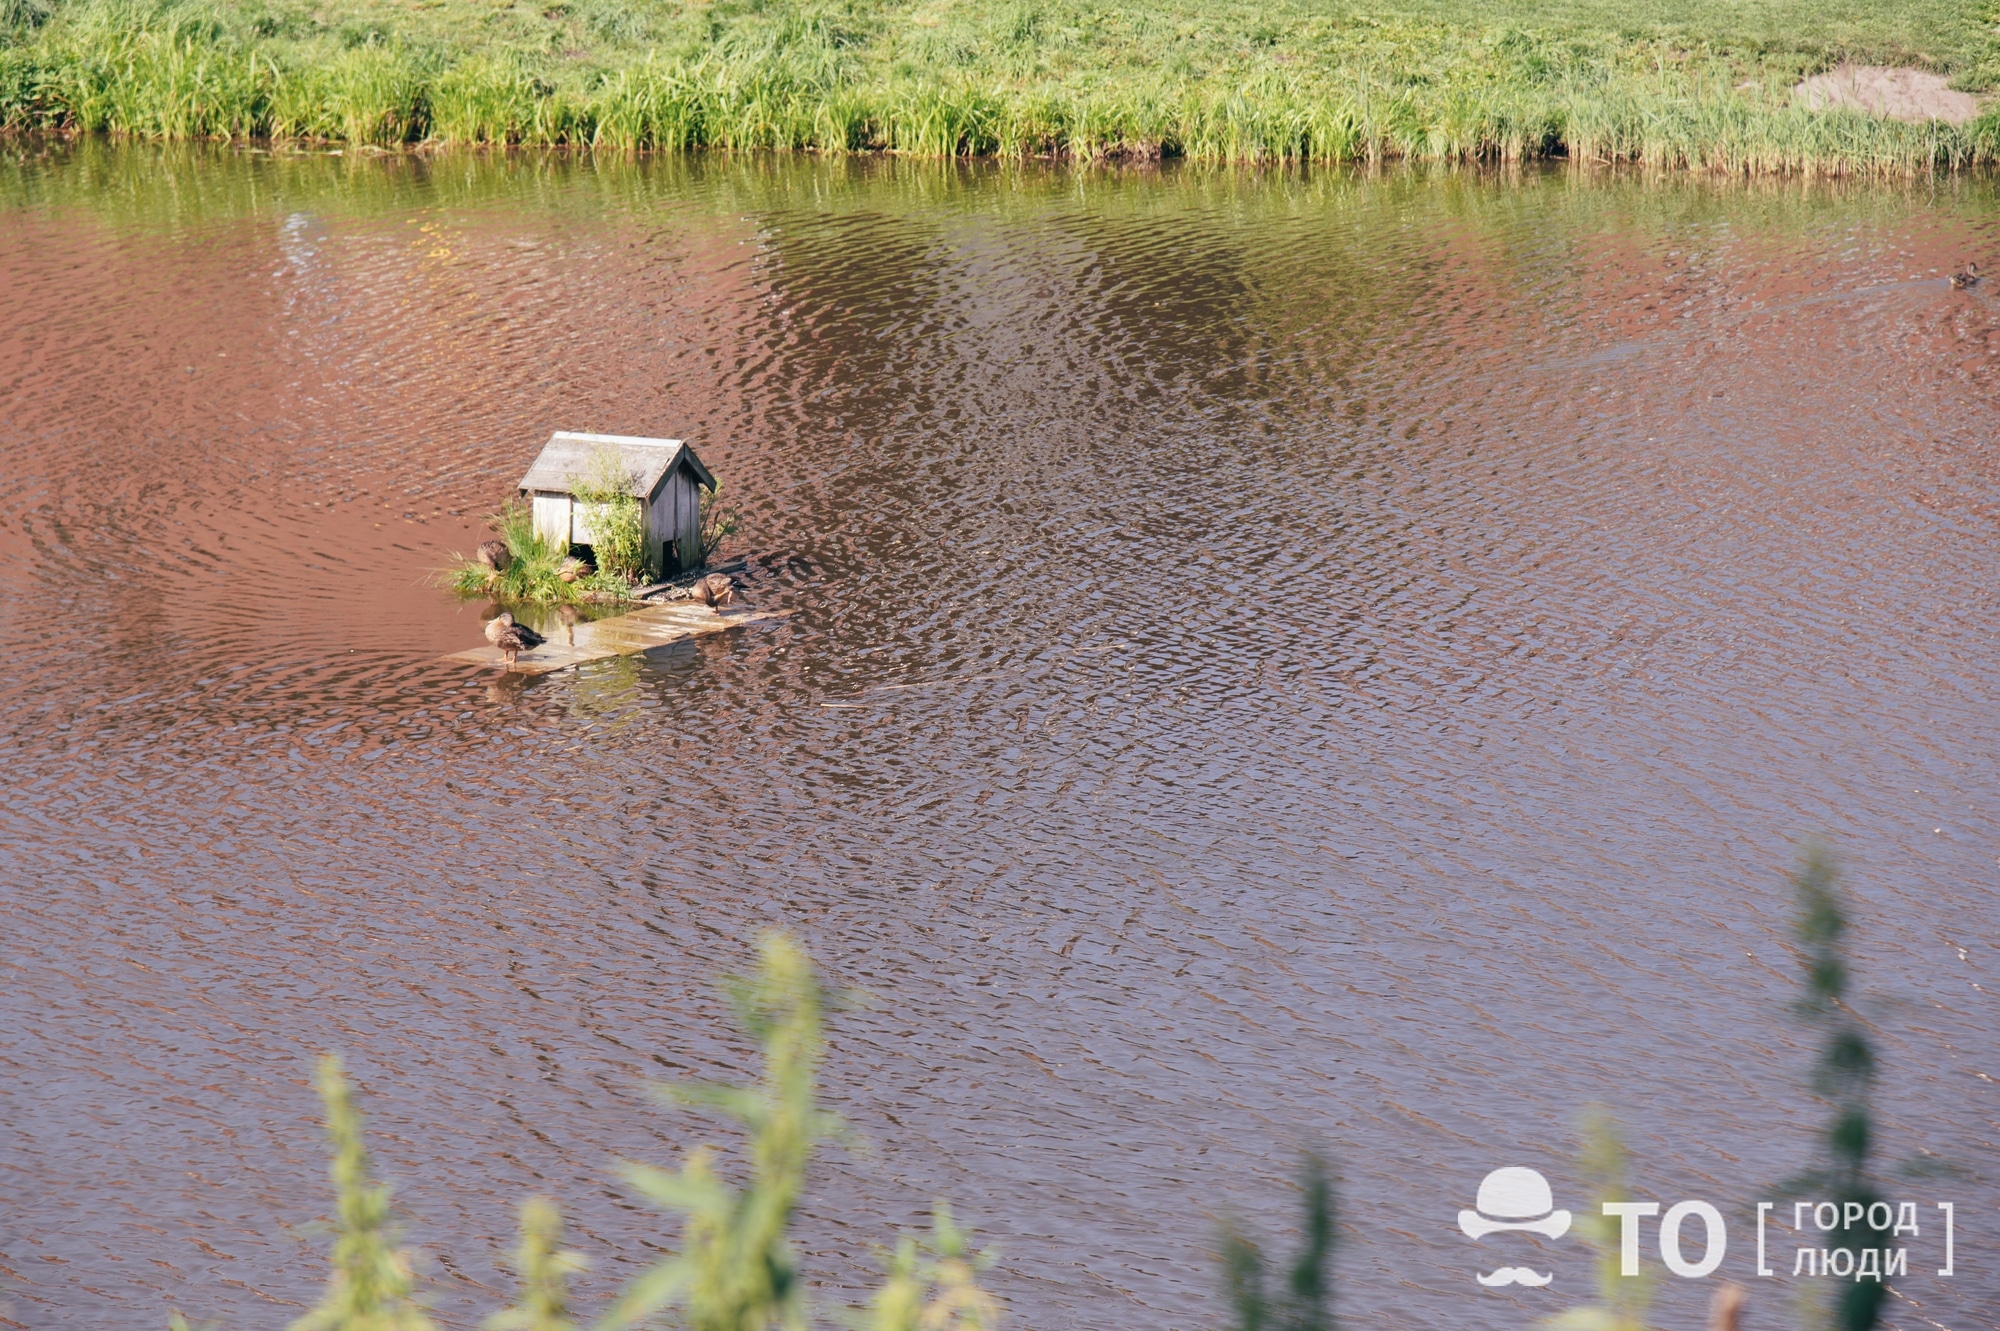 Природа, Томские новости, Экология, утки животные помощь кормушки уточки университетское озеро домики Водолазы подняли утонувшие в Университетском озере Томска утиные домики